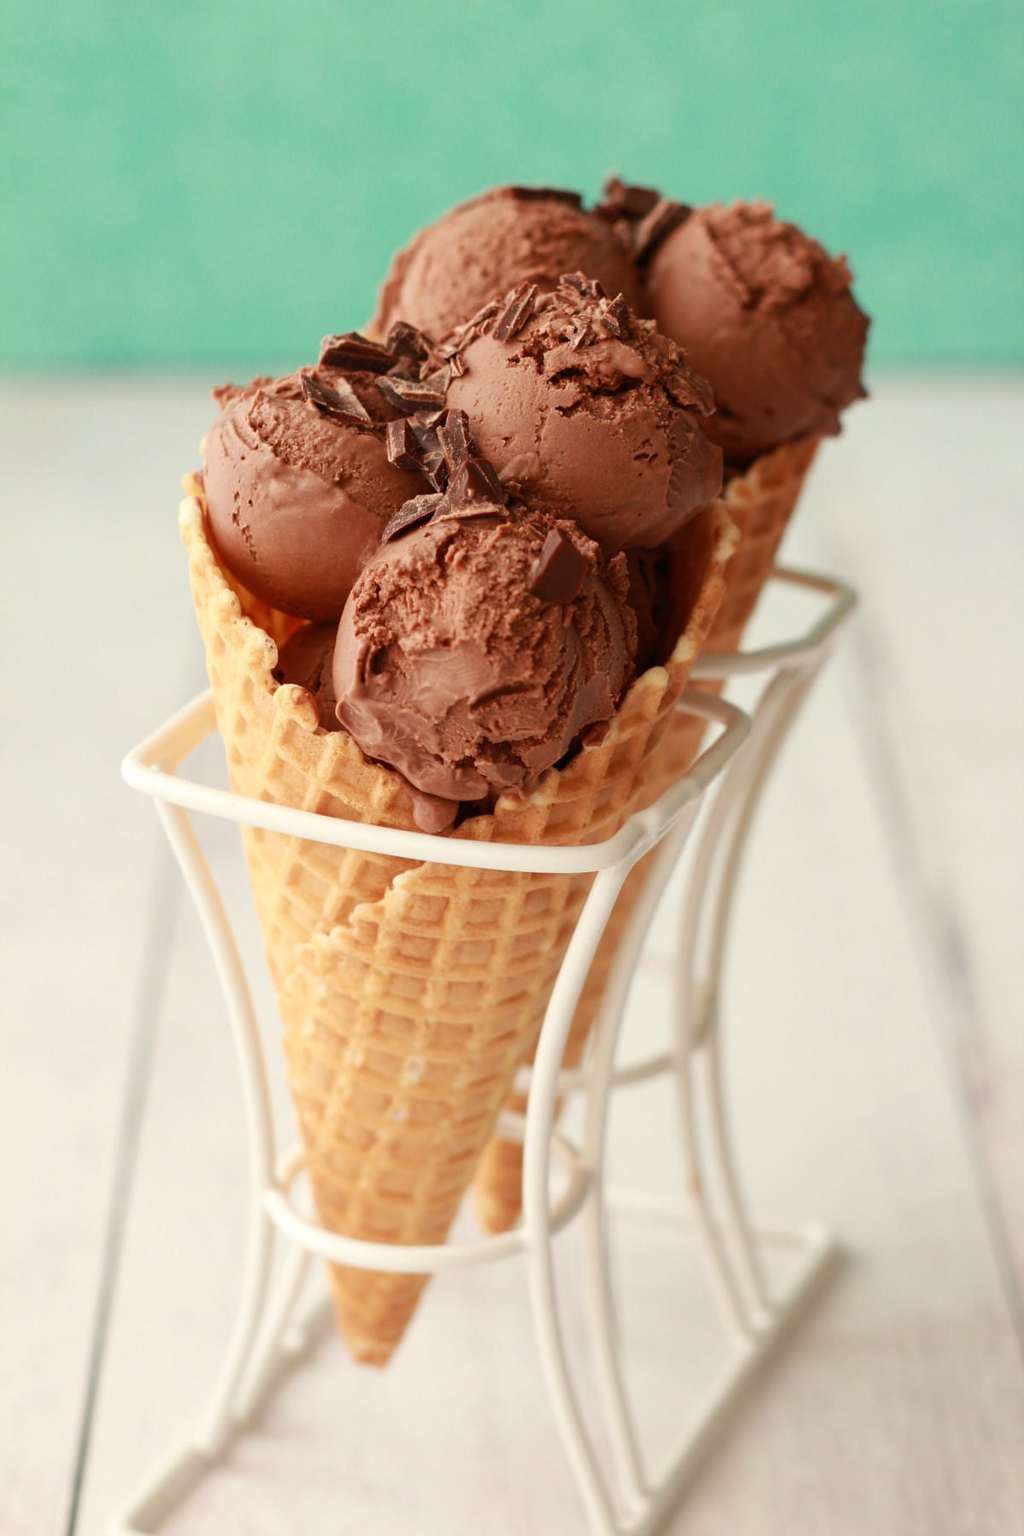 Chocolate ice cream in sugar cones. 